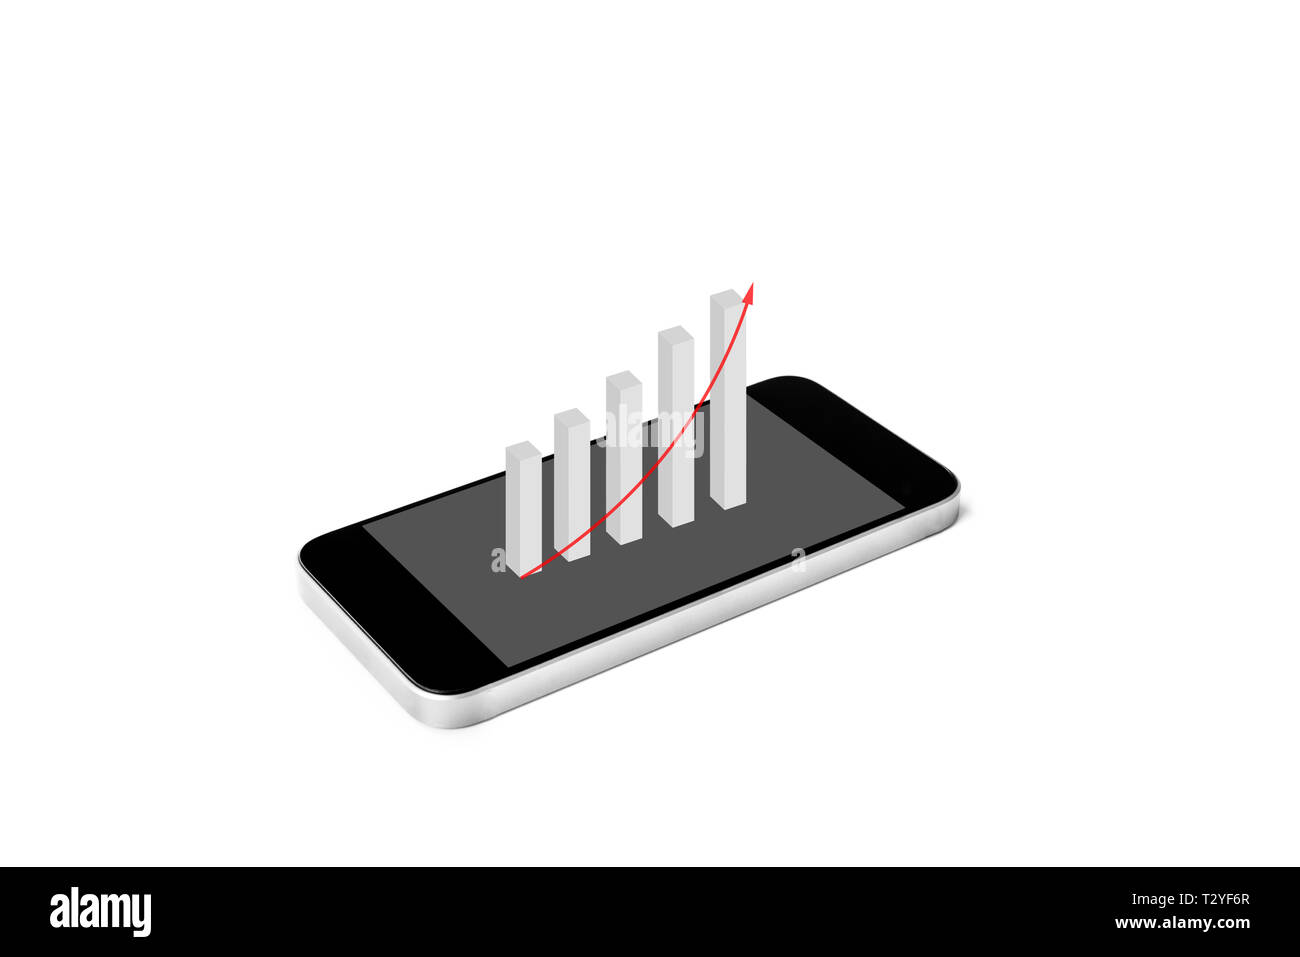 Telefono cellulare con finanziarie crescenti grafico a barre sullo schermo, isolato su sfondo bianco Foto Stock